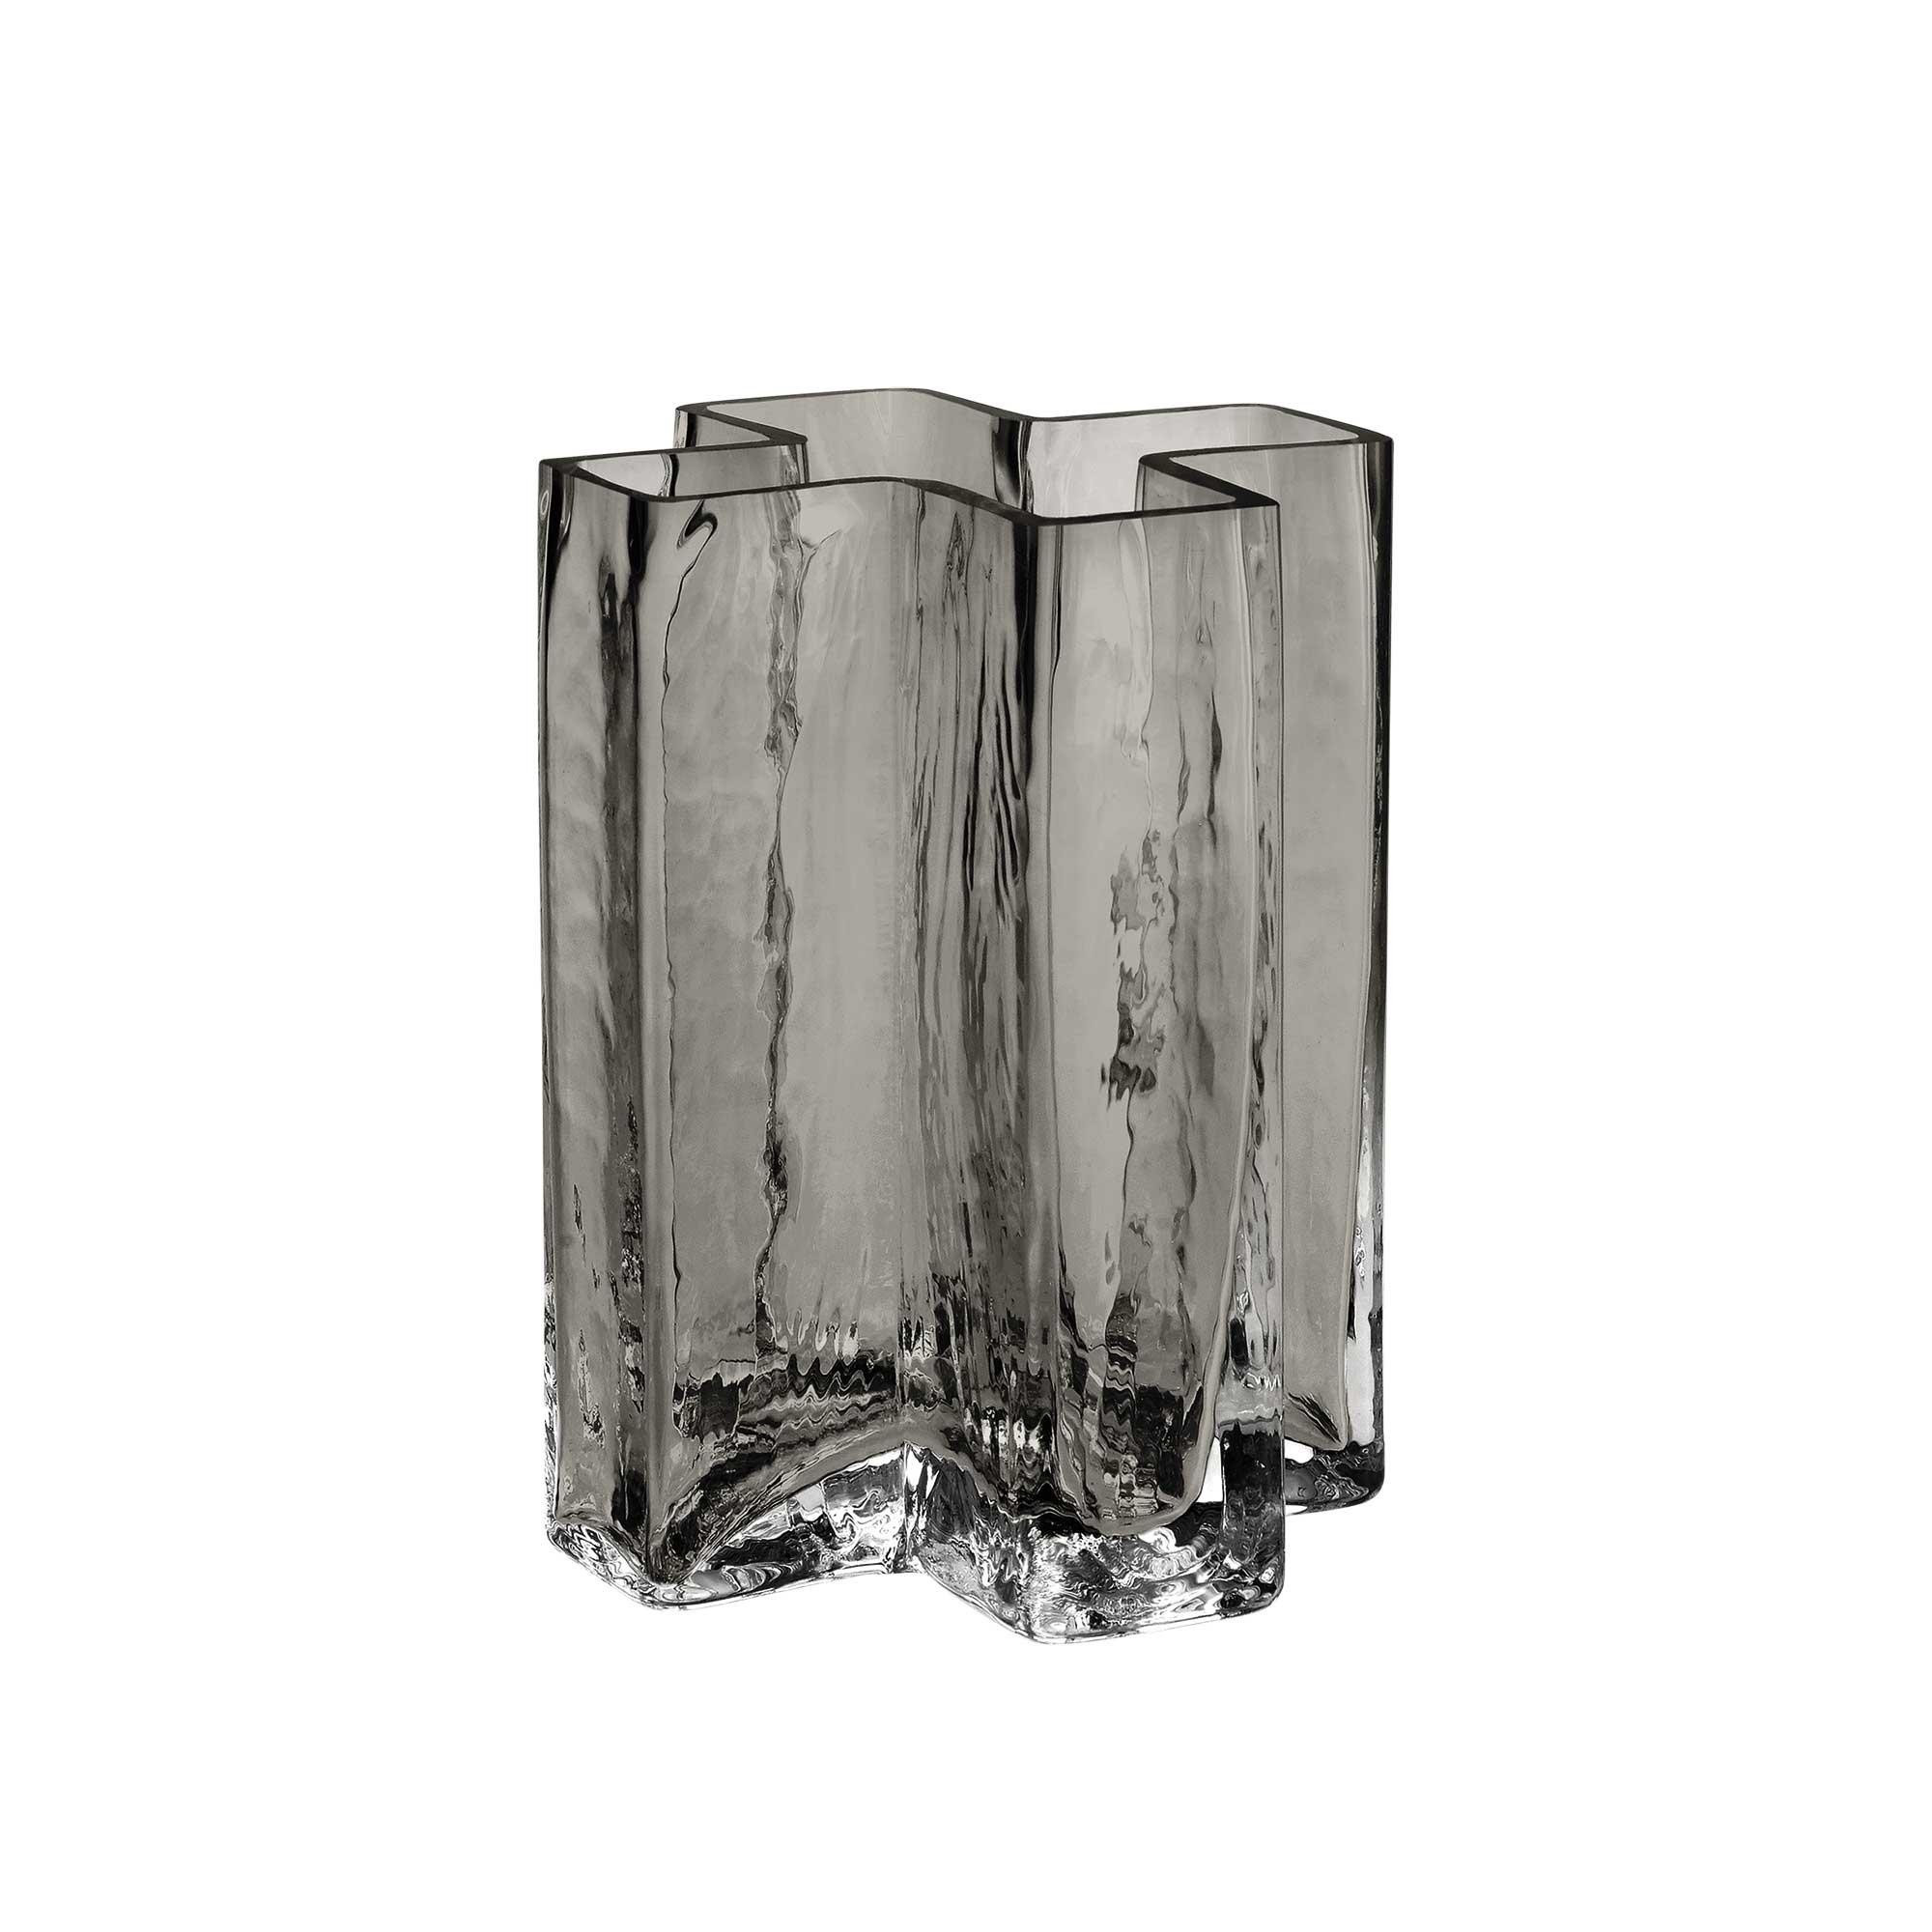 17 Perfect Glass Column Vase 2024 free download glass column vase of holmegaard crosses vase h 12cm ambientedirect within 232428 2000x2000 id1922477 6df3acc4d13b4e6f02c8f6454c52de0a